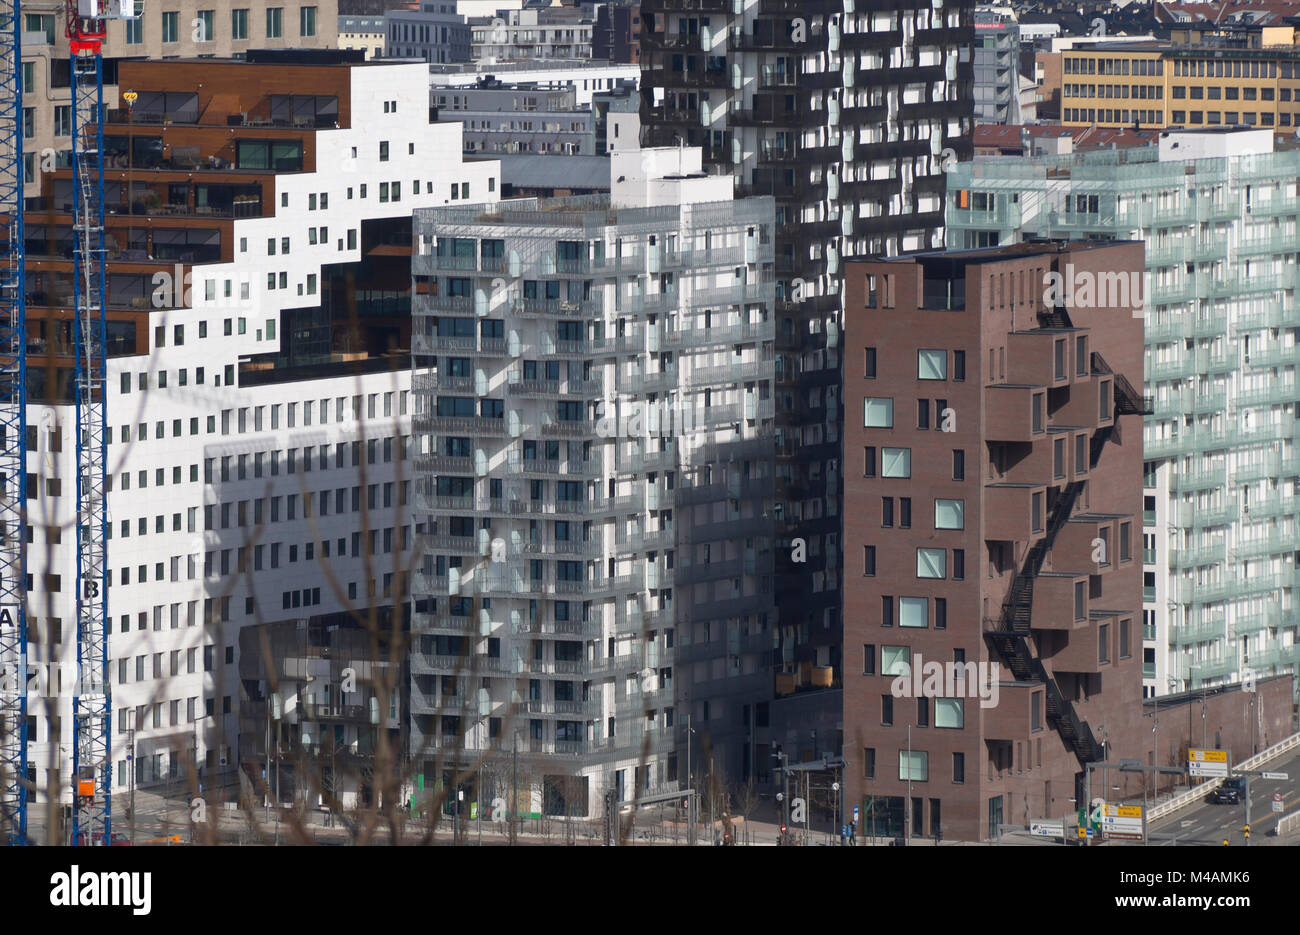 Moderna architettura norvegese nel continuo sviluppo di area del codice a barre in Bjørvika, il centro cittadino di Oslo Norvegia,diversi stili completandosi reciprocamente Foto Stock